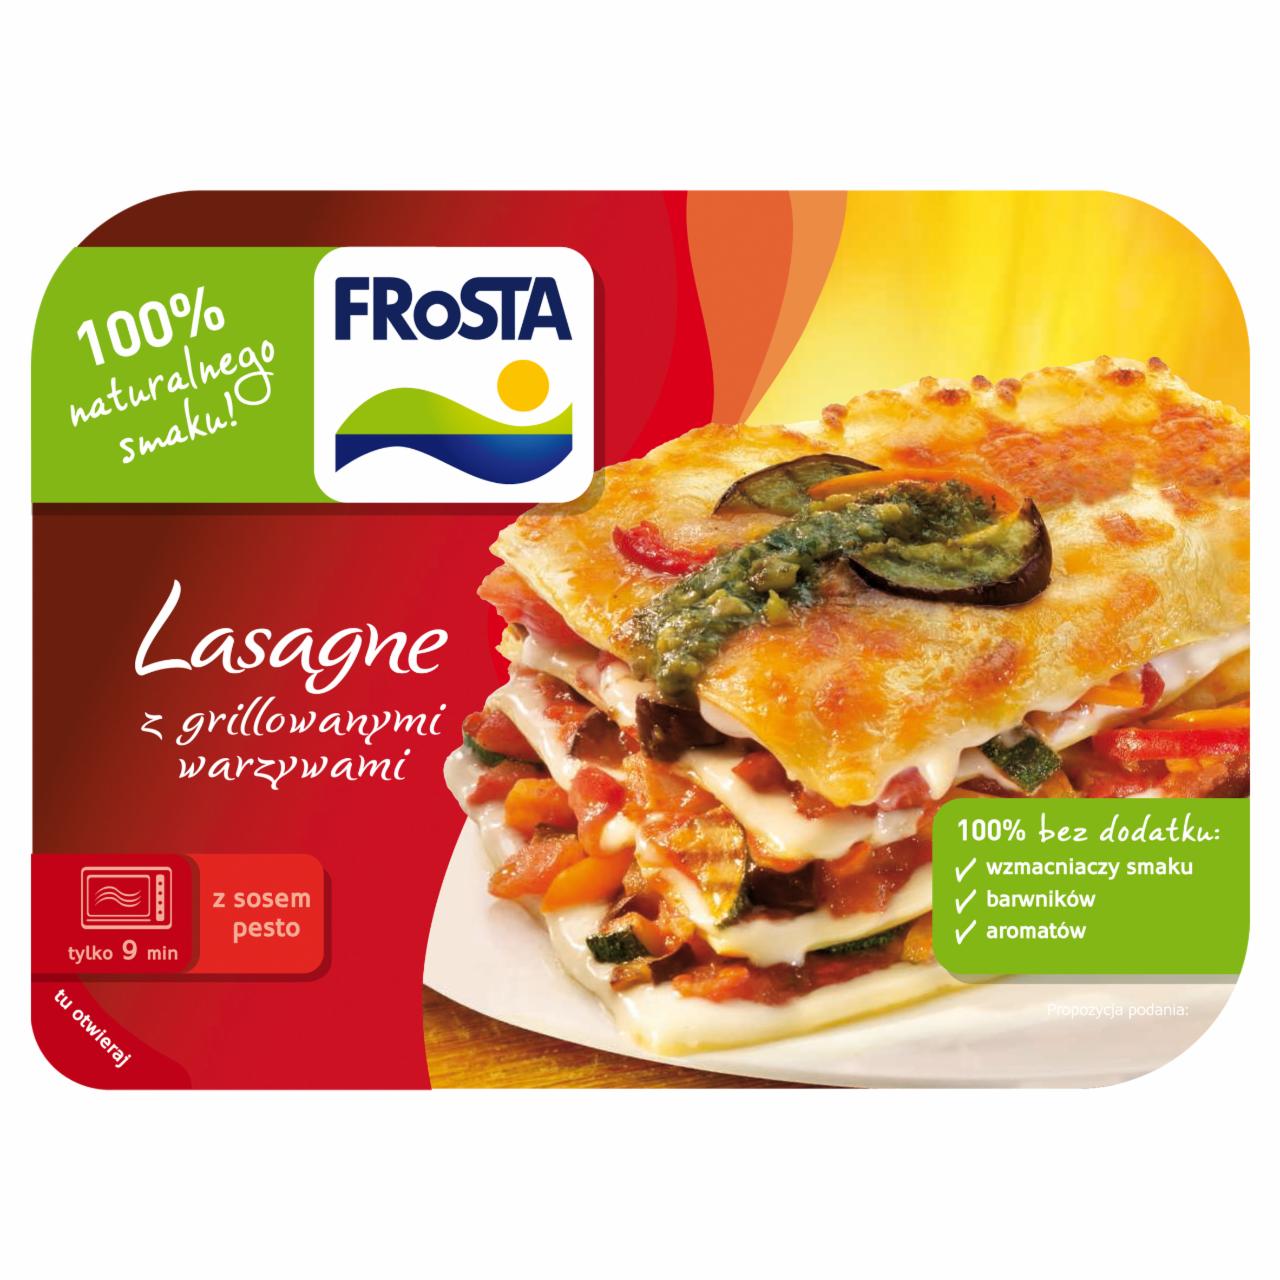 Zdjęcia - FRoSTA Lasagne z grillowanymi warzywami 375 g